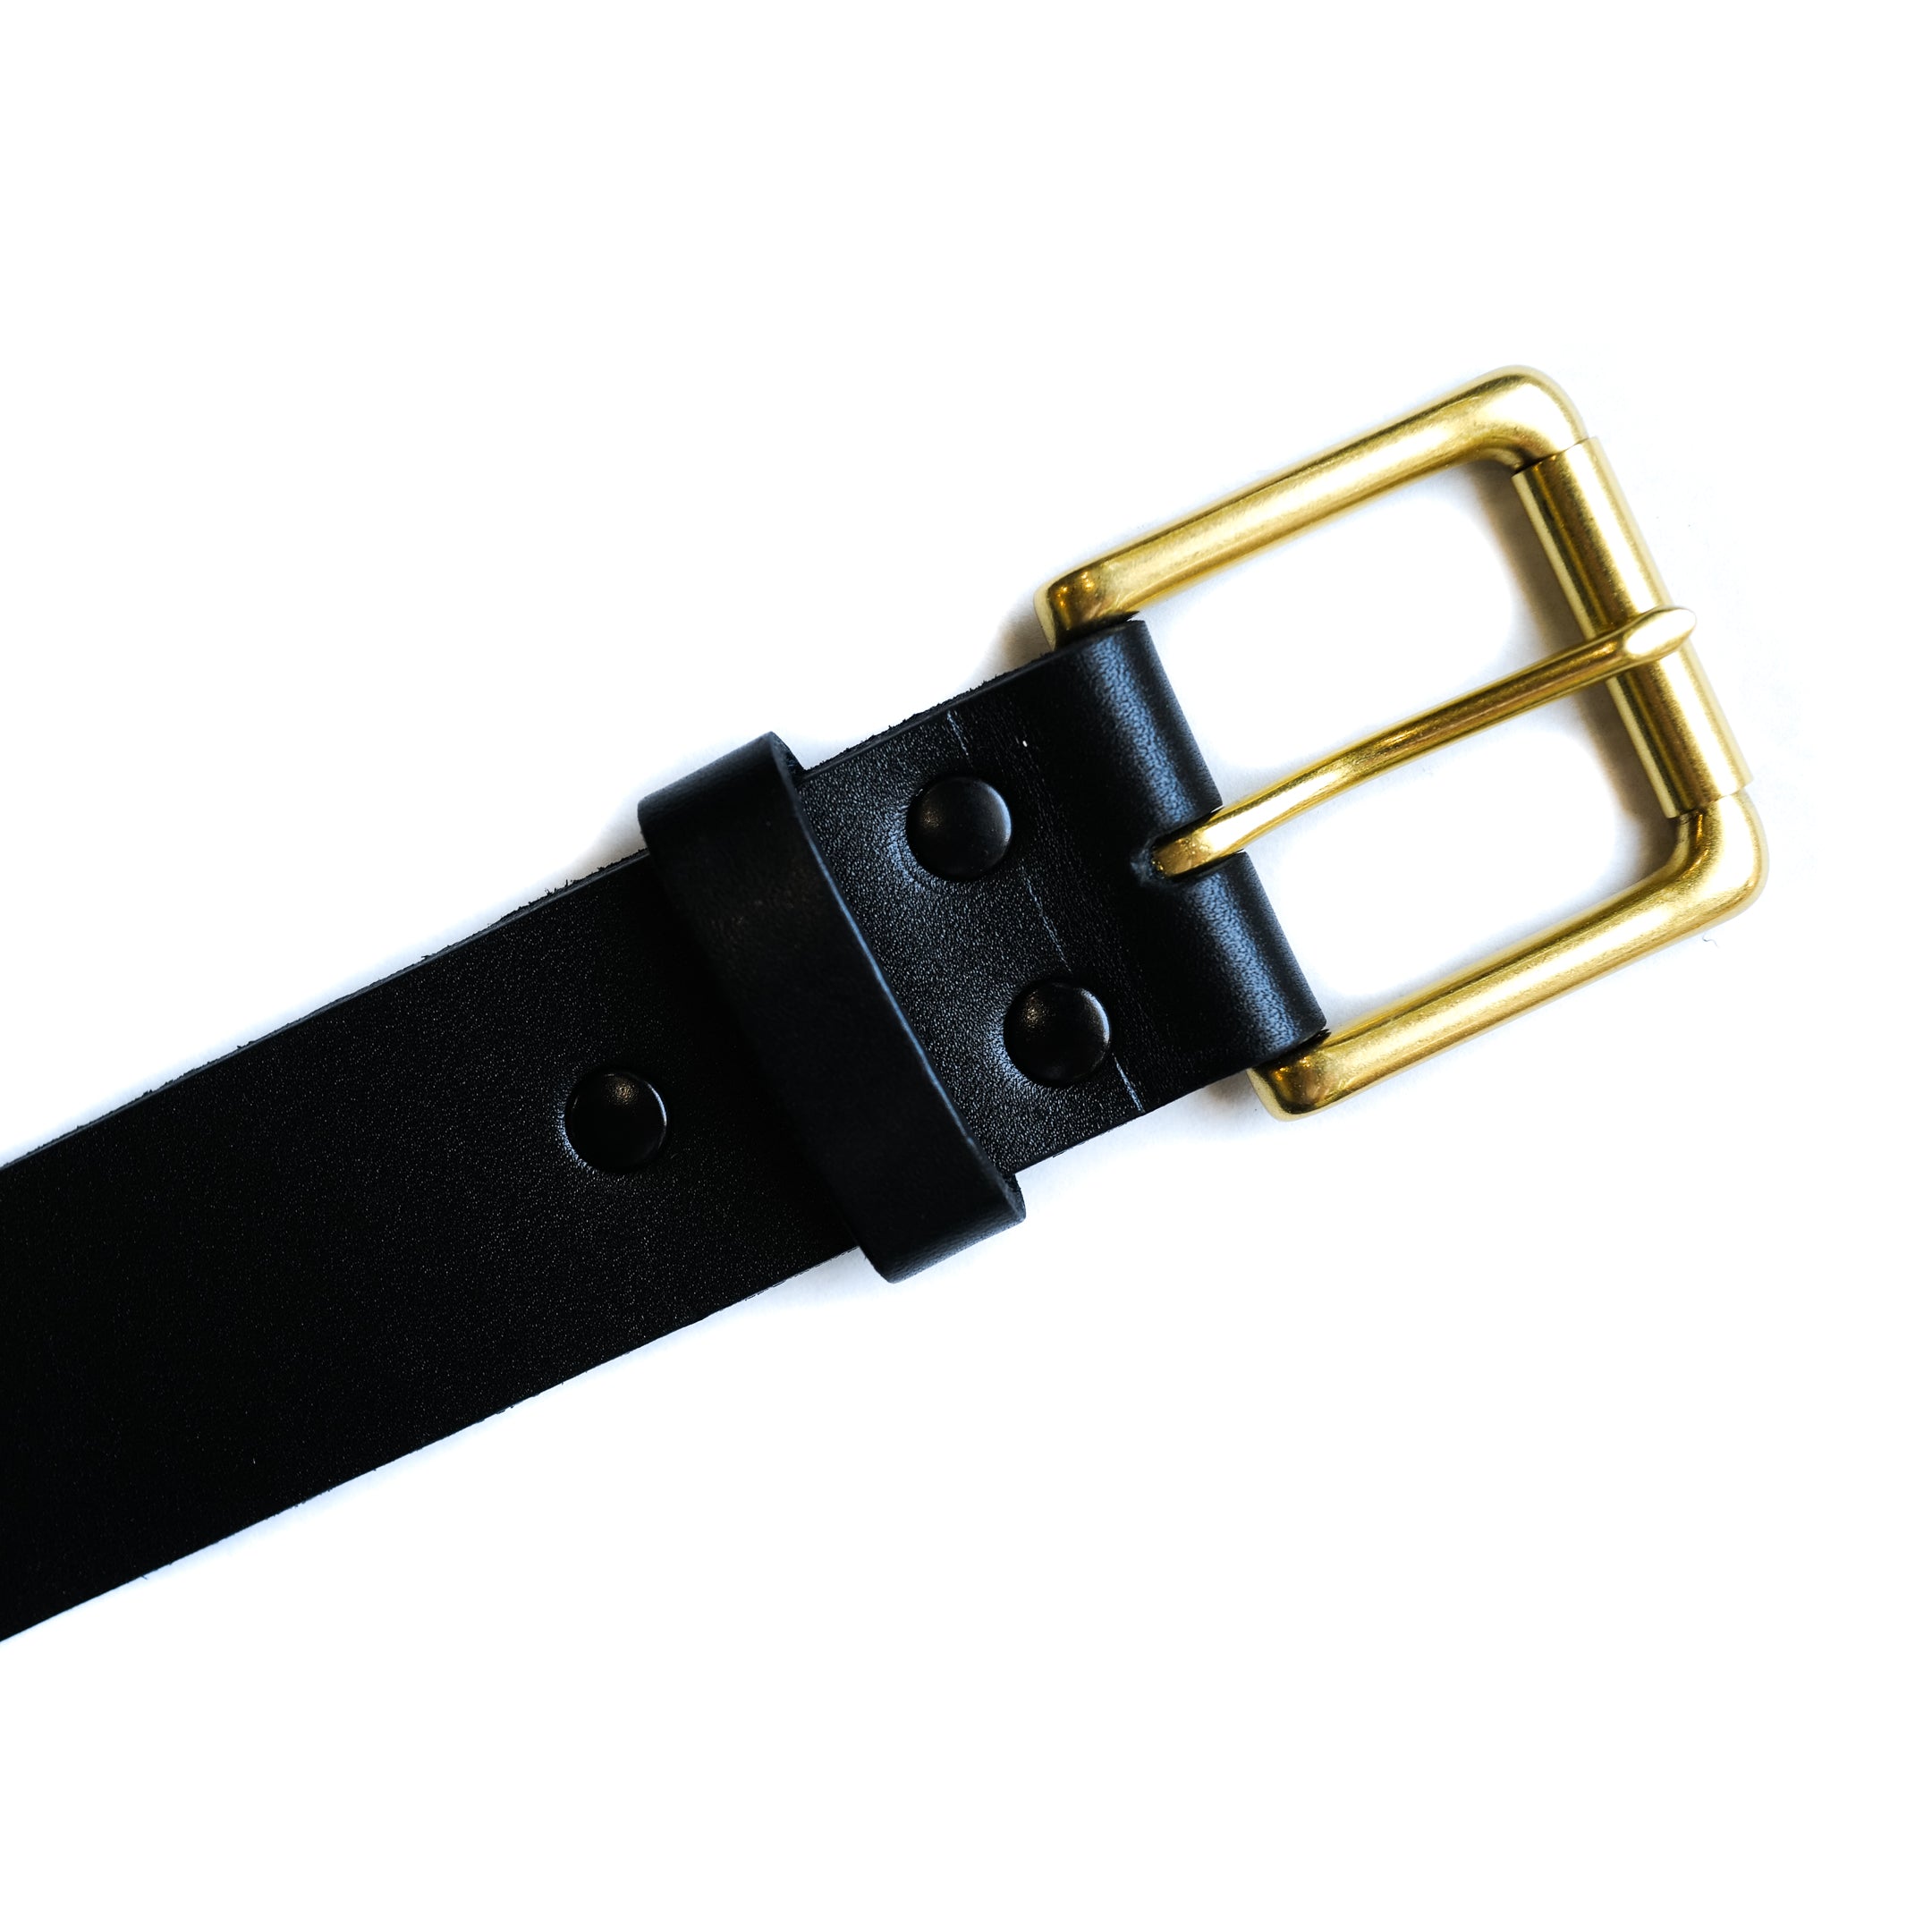 ButterScotch - 1.5" Roller Bar Belt - Black & Brass